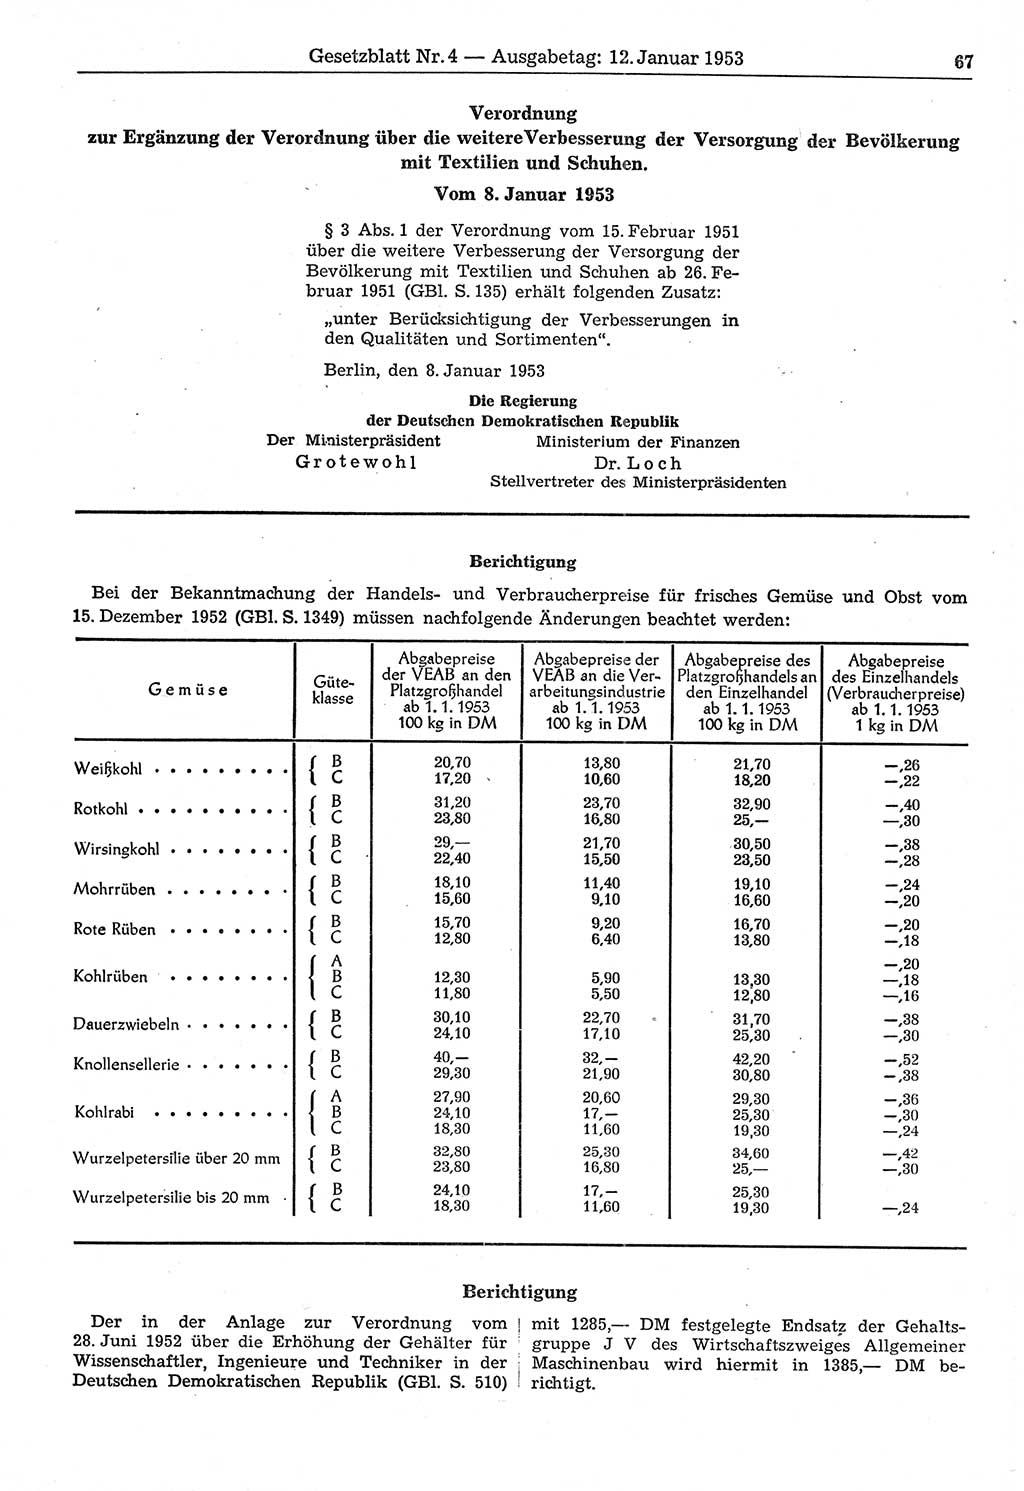 Gesetzblatt (GBl.) der Deutschen Demokratischen Republik (DDR) 1953, Seite 67 (GBl. DDR 1953, S. 67)